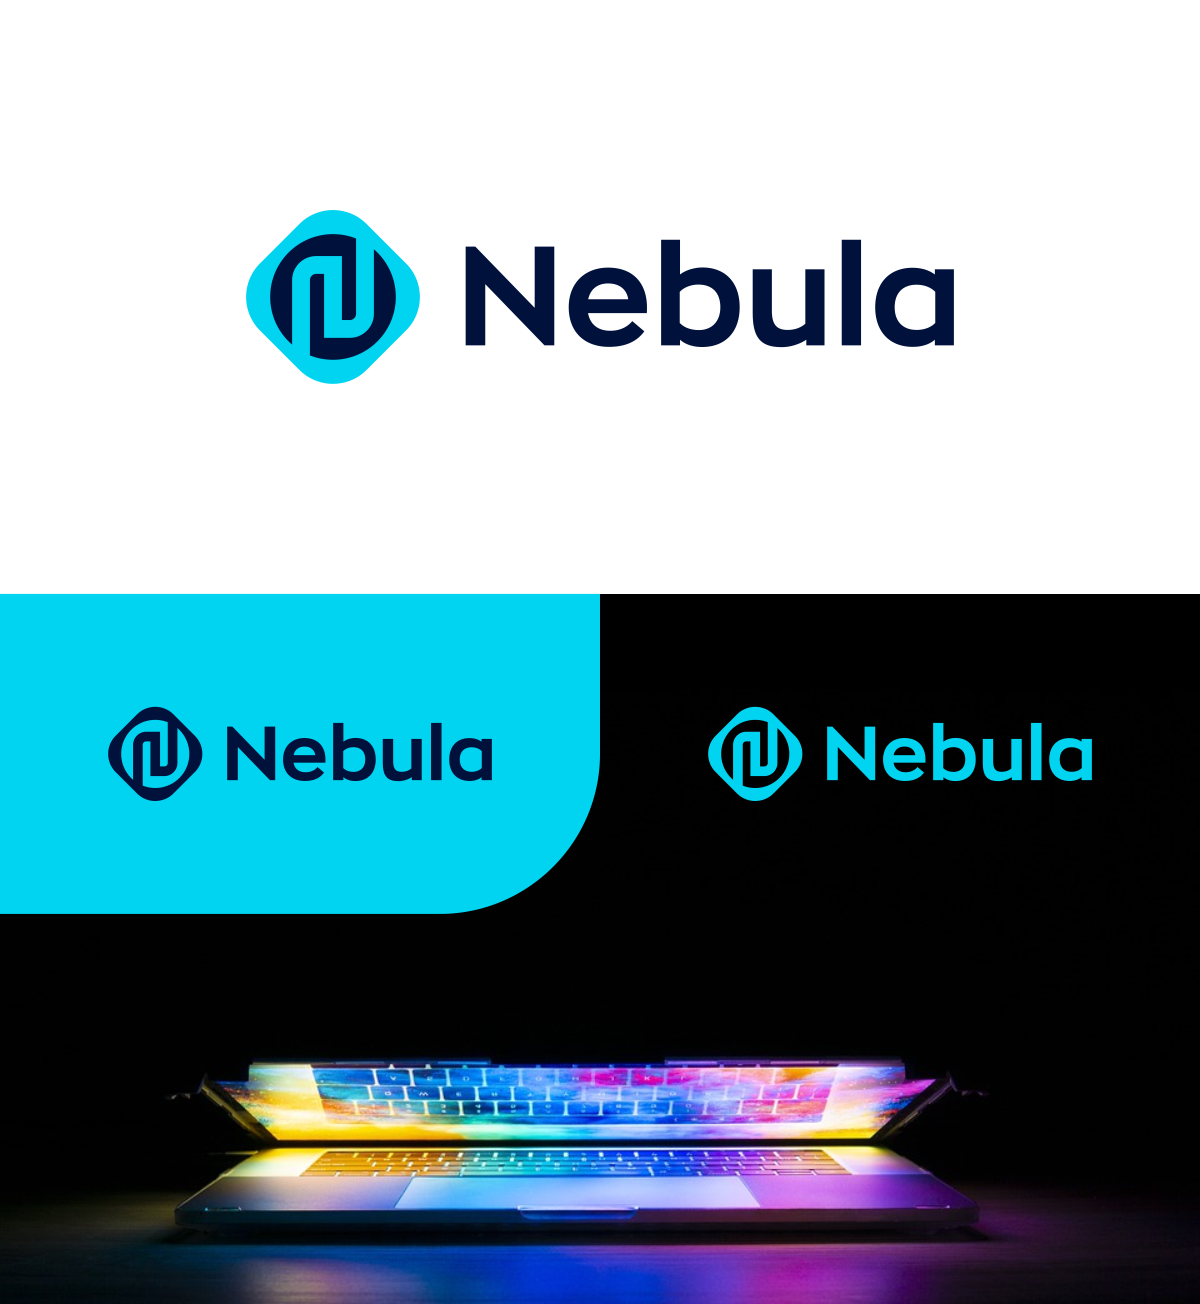 Nebula_Technologies_01.png